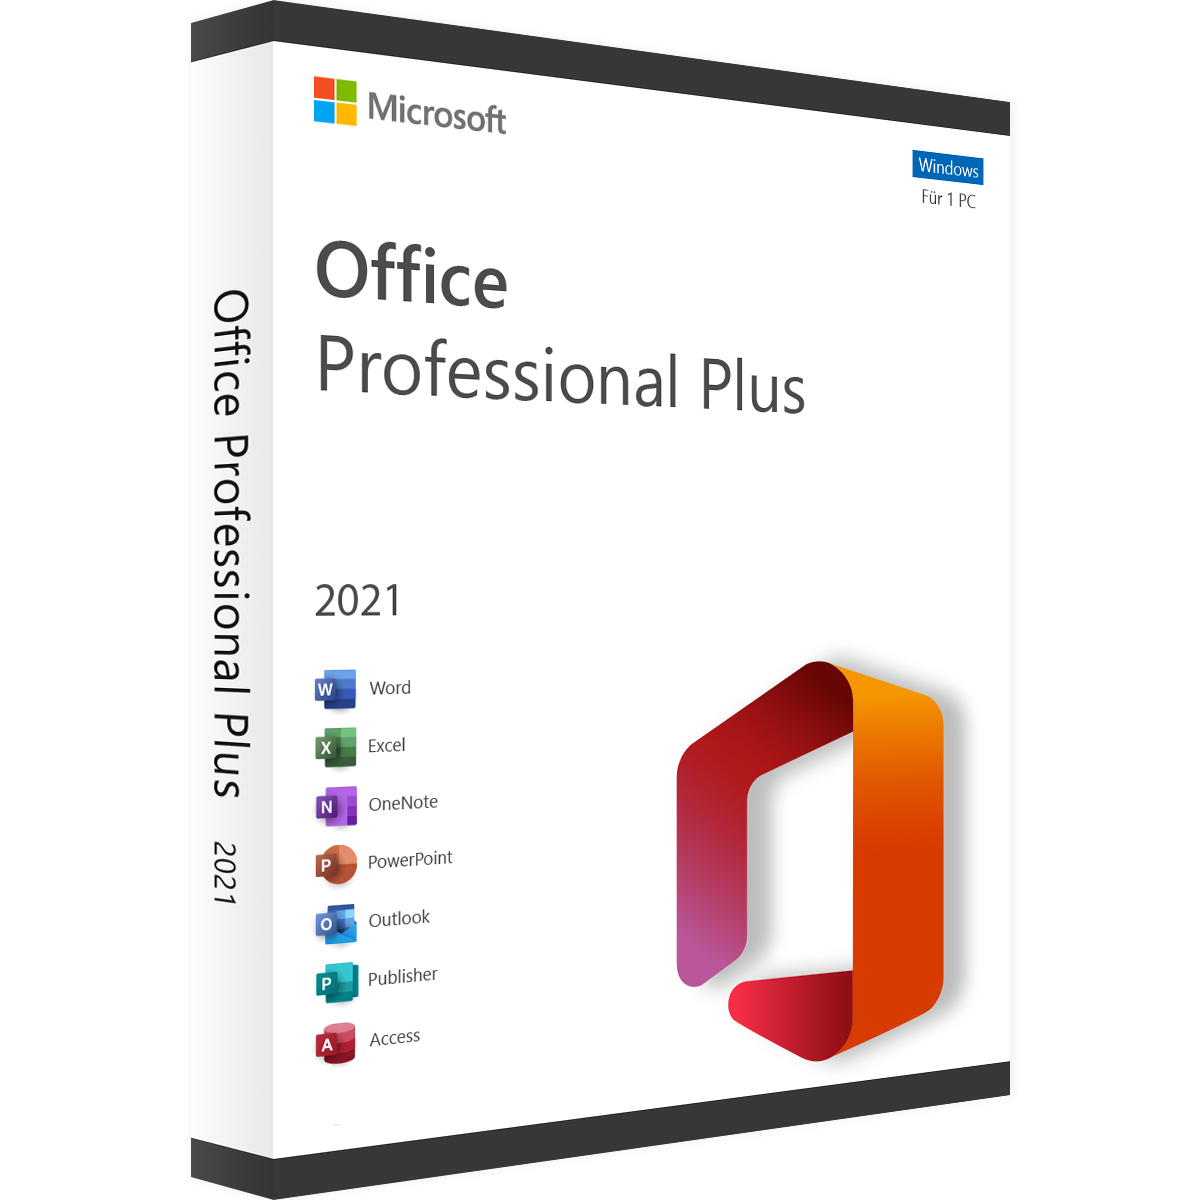 Microsoft Office 2021 Professional Plus - Produktschlüssel - Vollversion - Sofort-Download - 1 PC von Microsoft